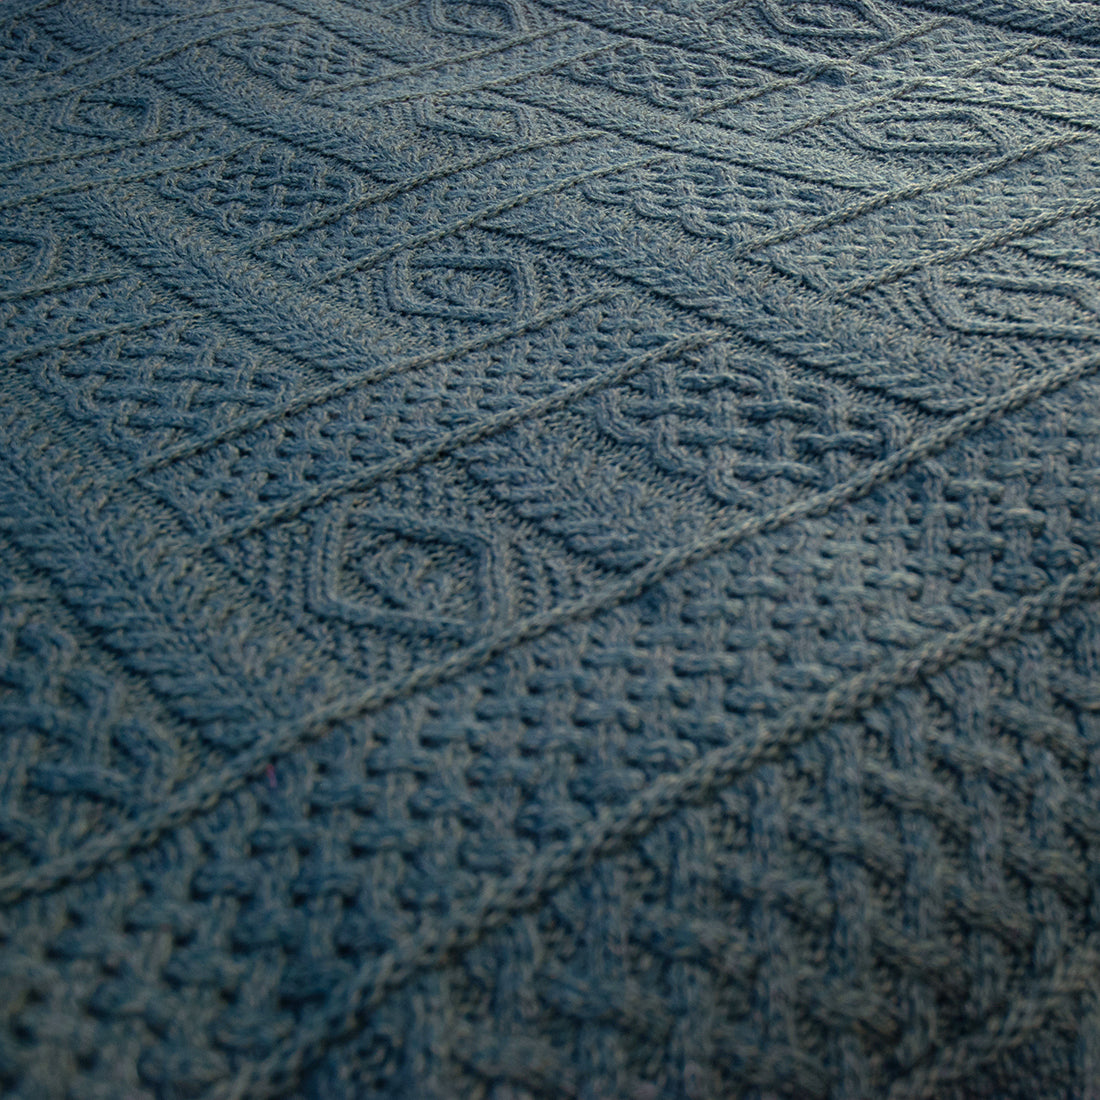 Manta 100% lana merino con flecos, tamaño 140x200cm, diseño rayas  crudo/marengo/gris melange - Tienda Hohos